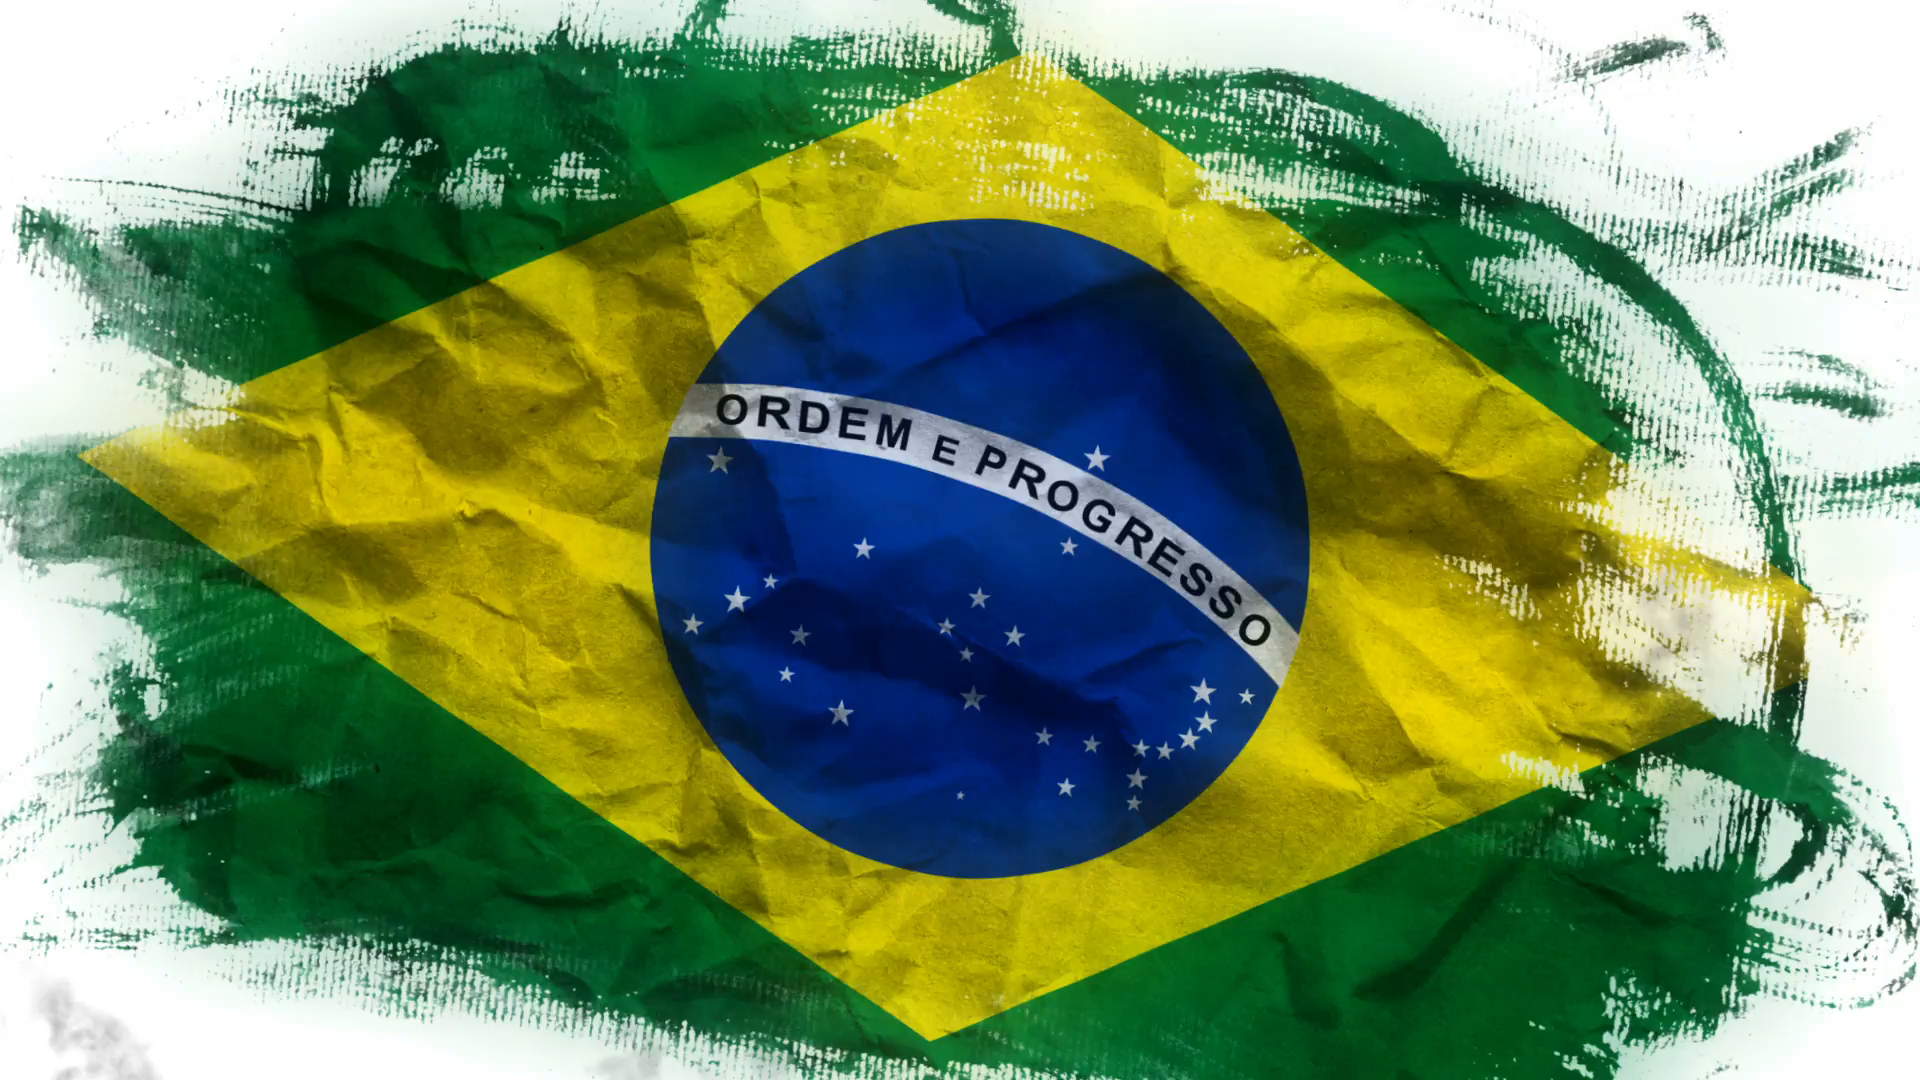 Brazil Flag PNG Image in Transparent